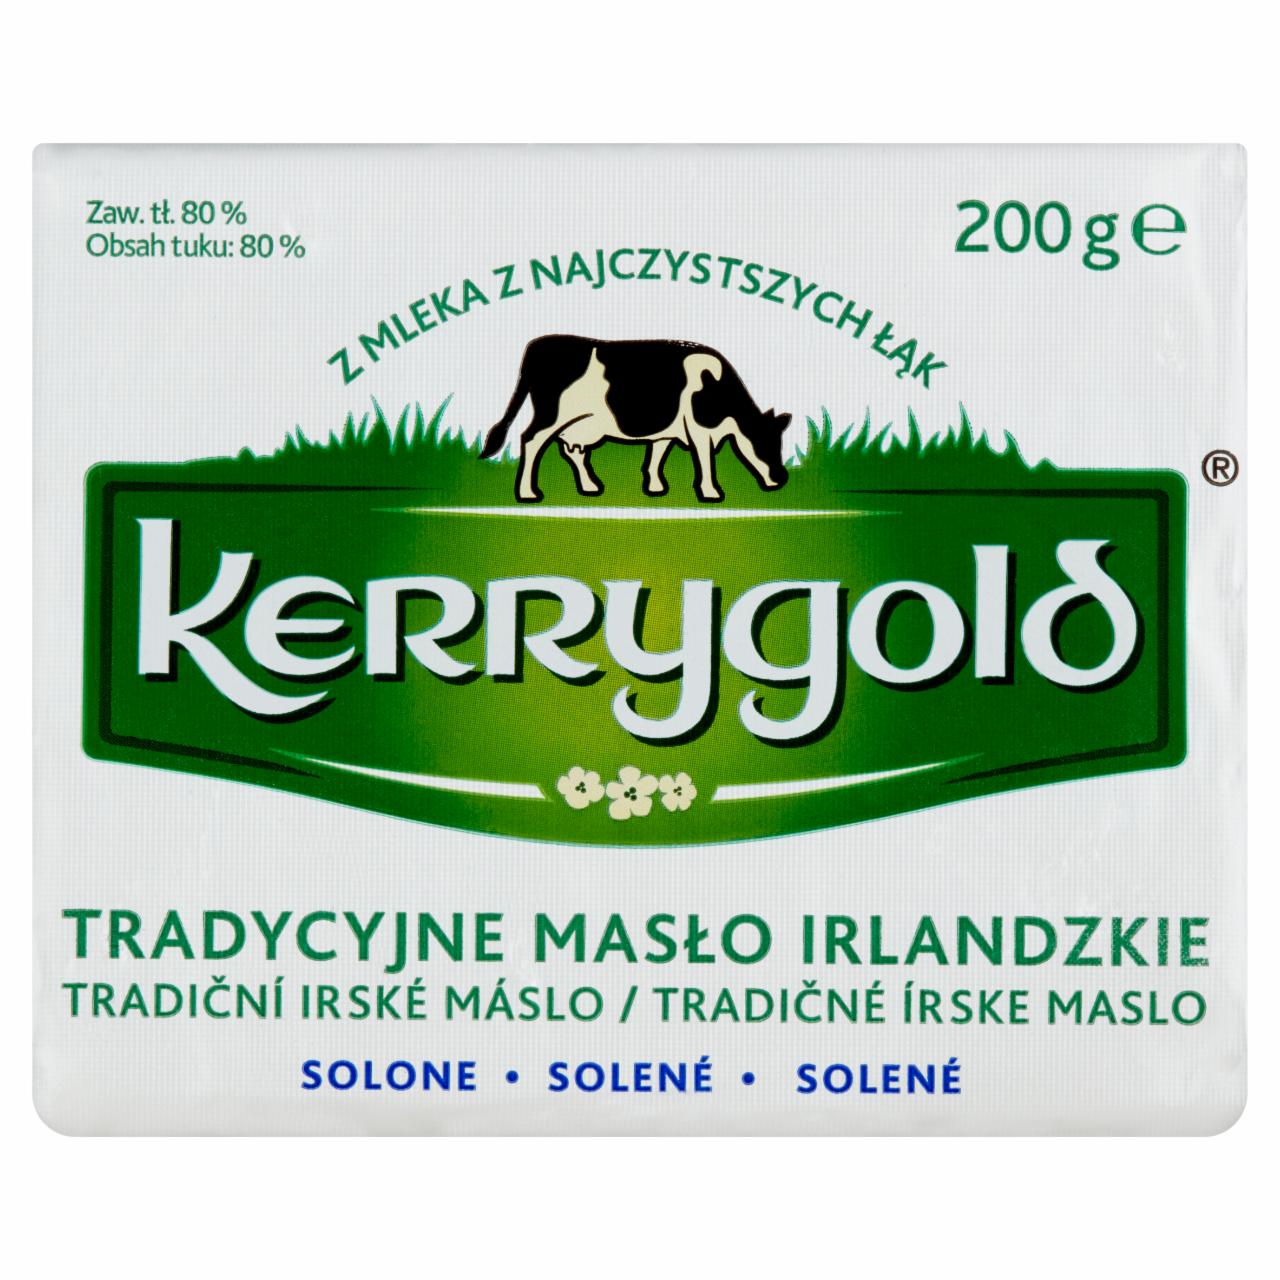 Zdjęcia - Kerrygold Tradycyjne masło irlandzkie solone 200 g